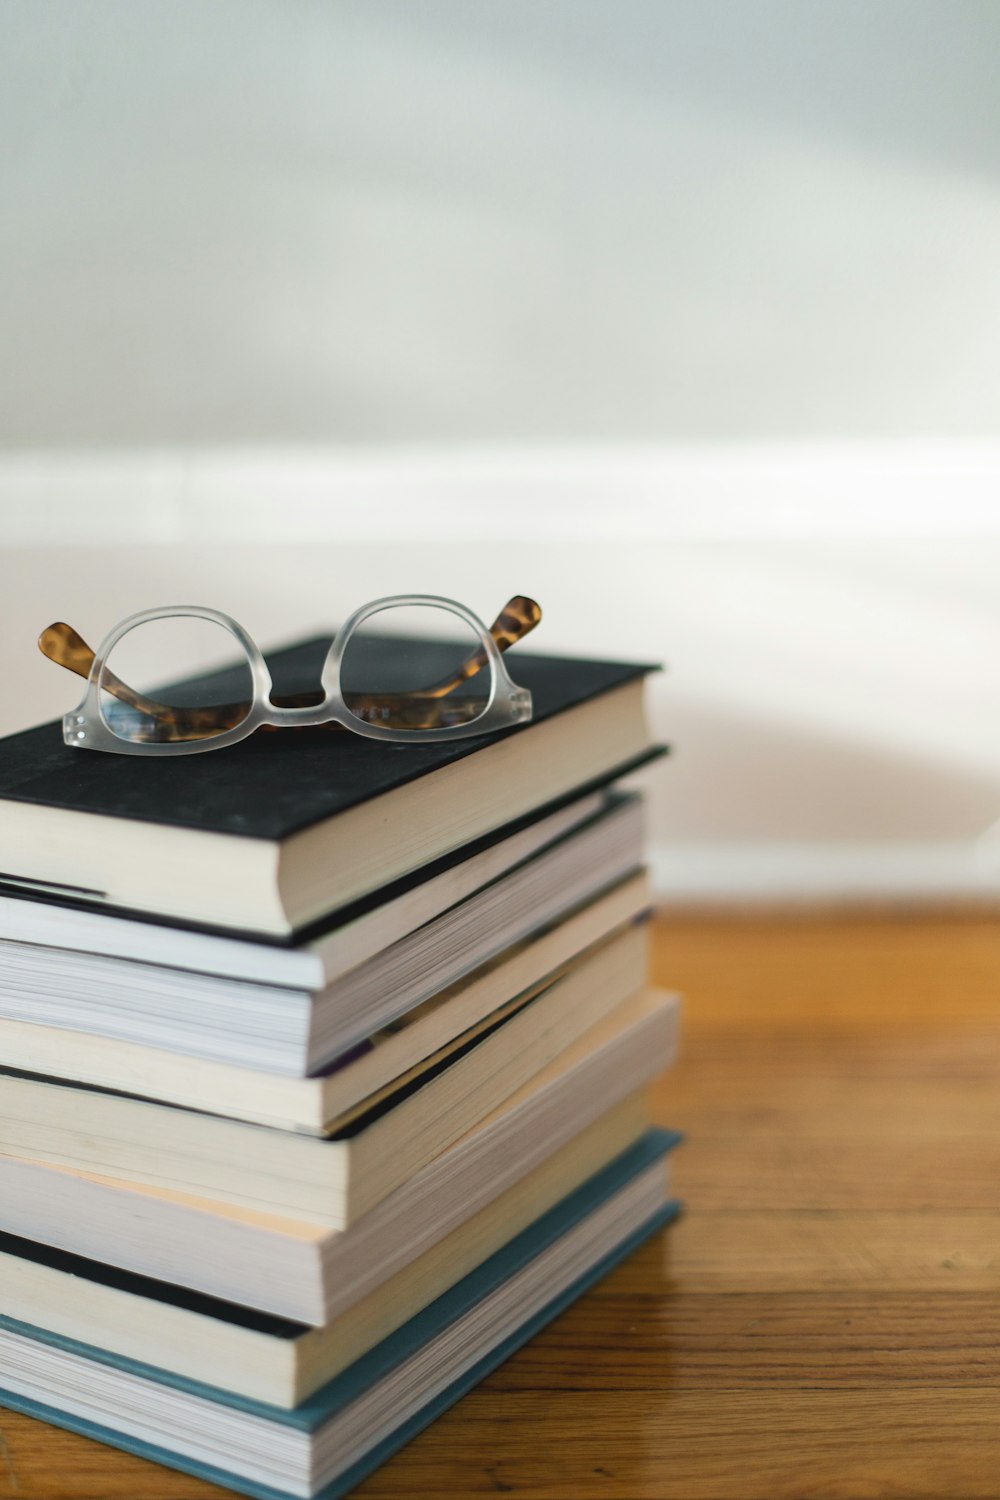 Brille mit klarem Rahmen auf einem Bücherstapel